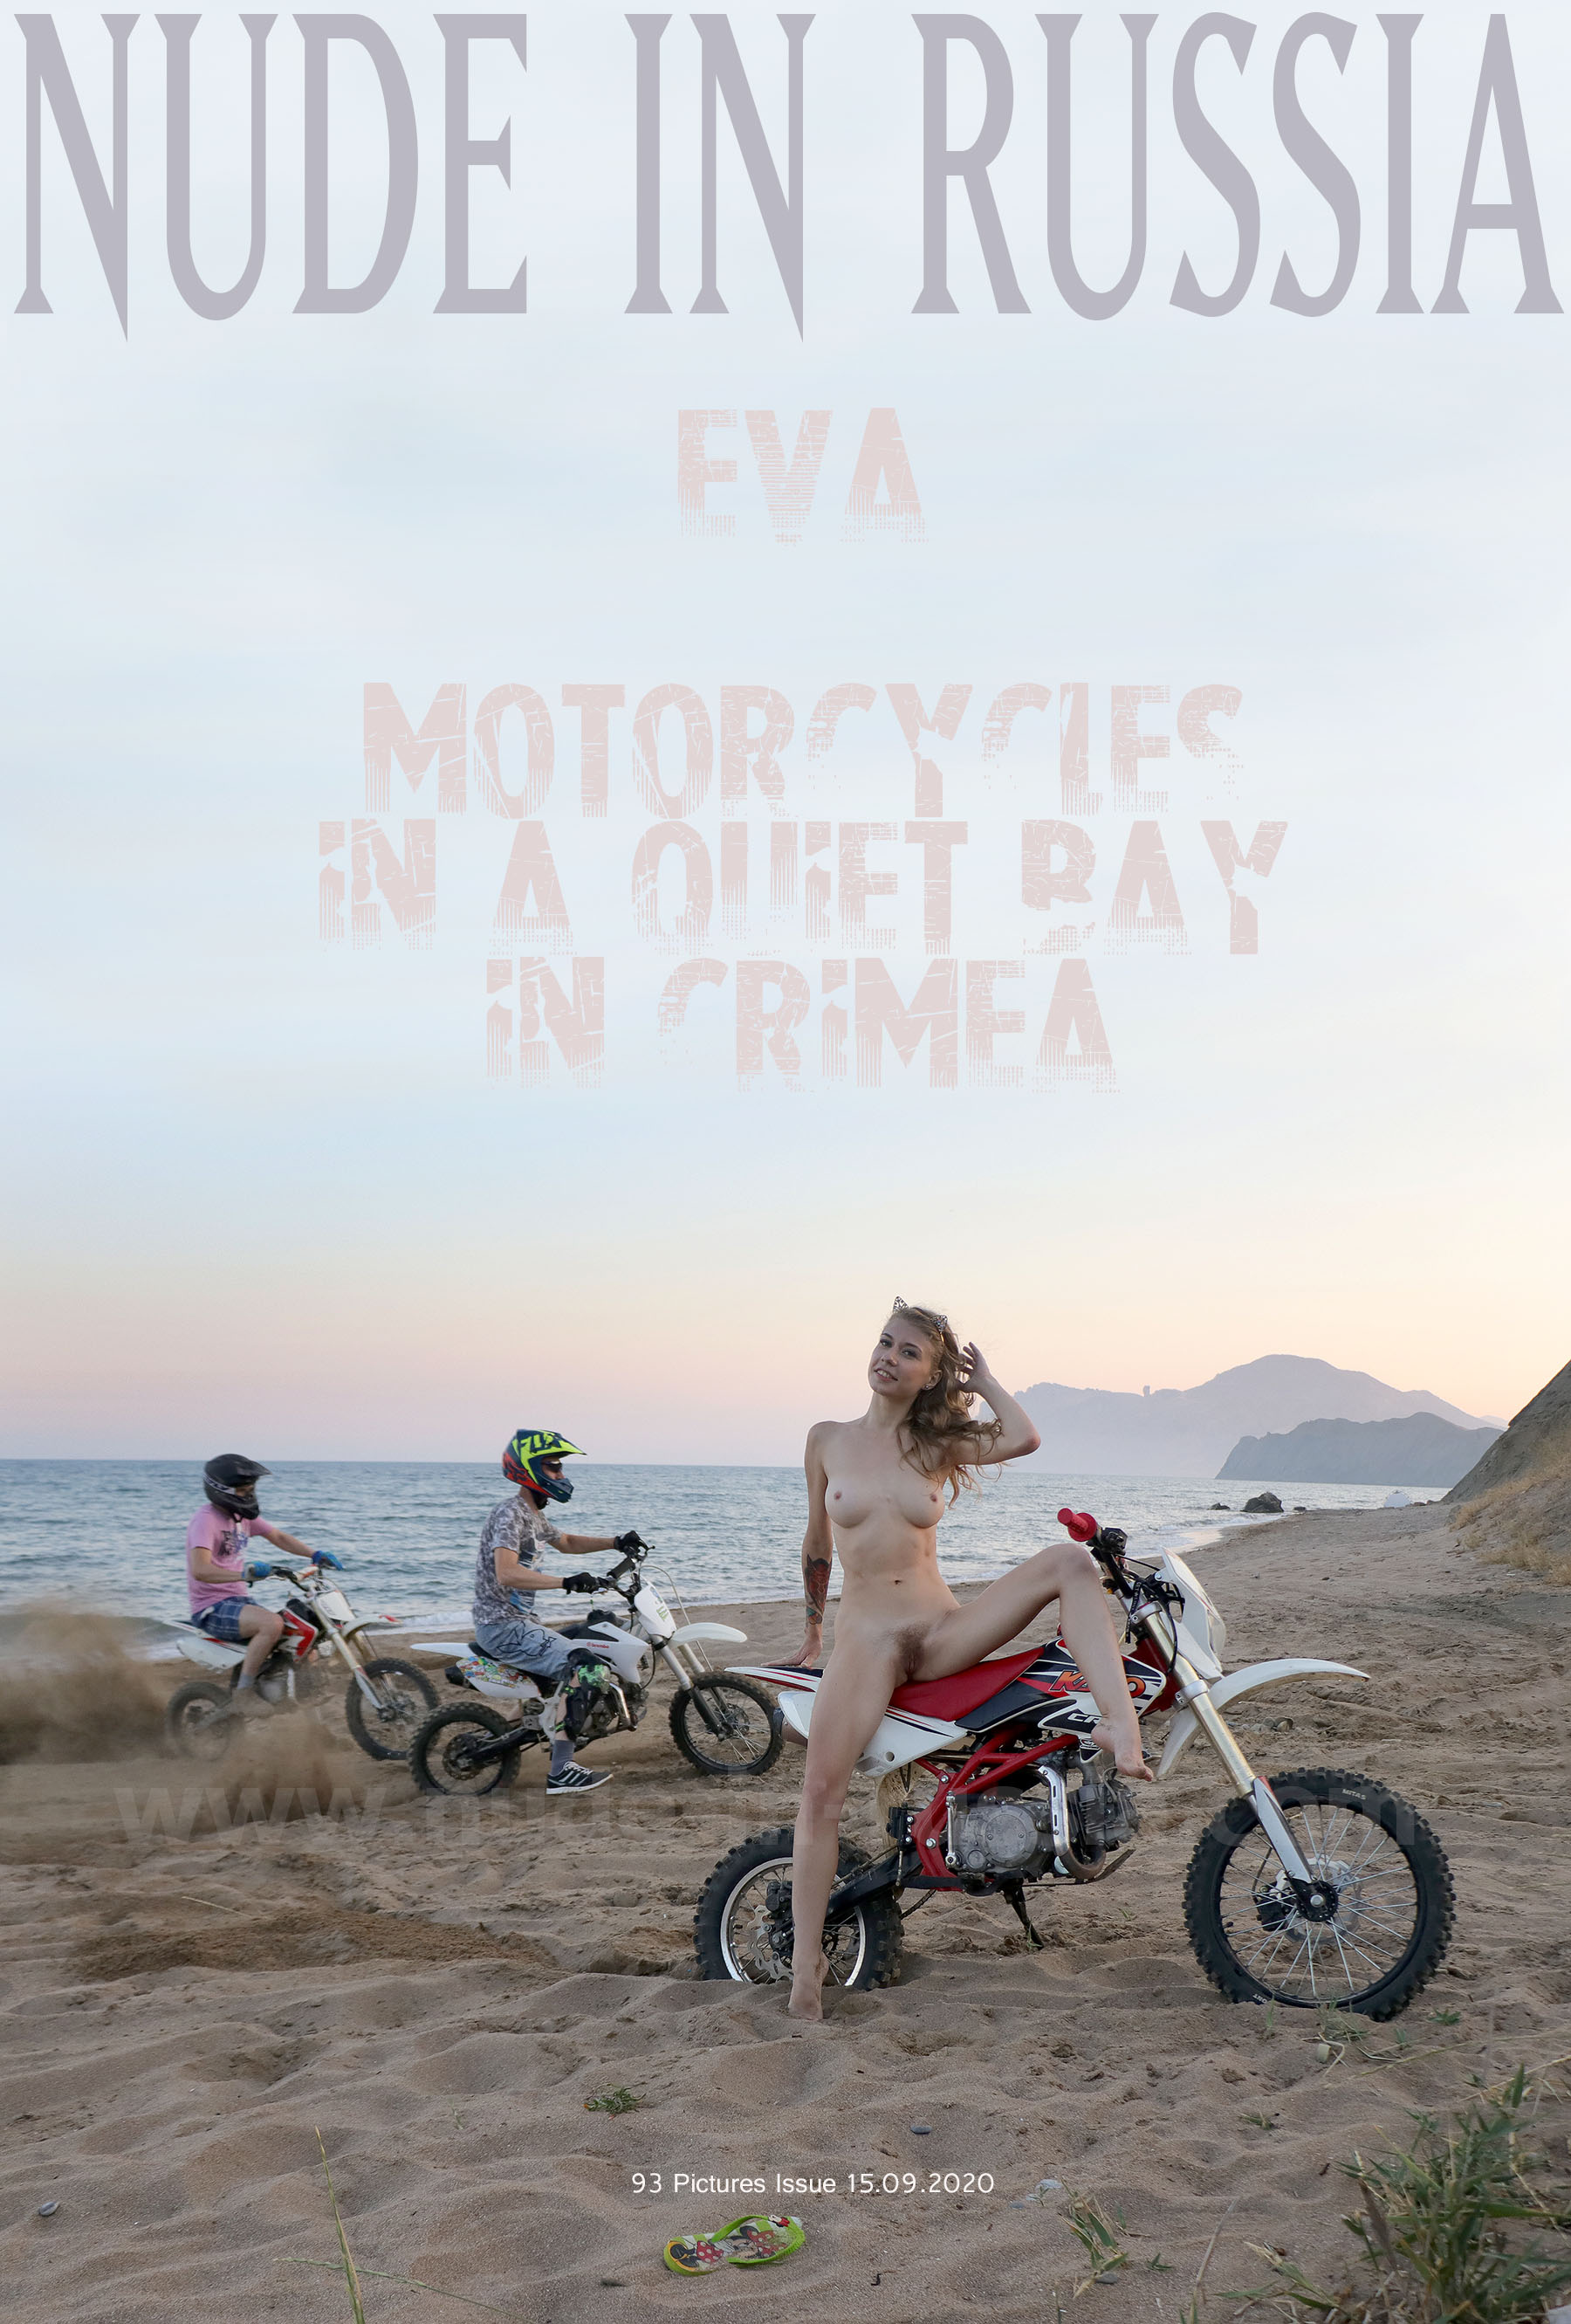 NIR-2020-09-15 - Eva 2 - Motorcycles in a quiet b (1).jpg